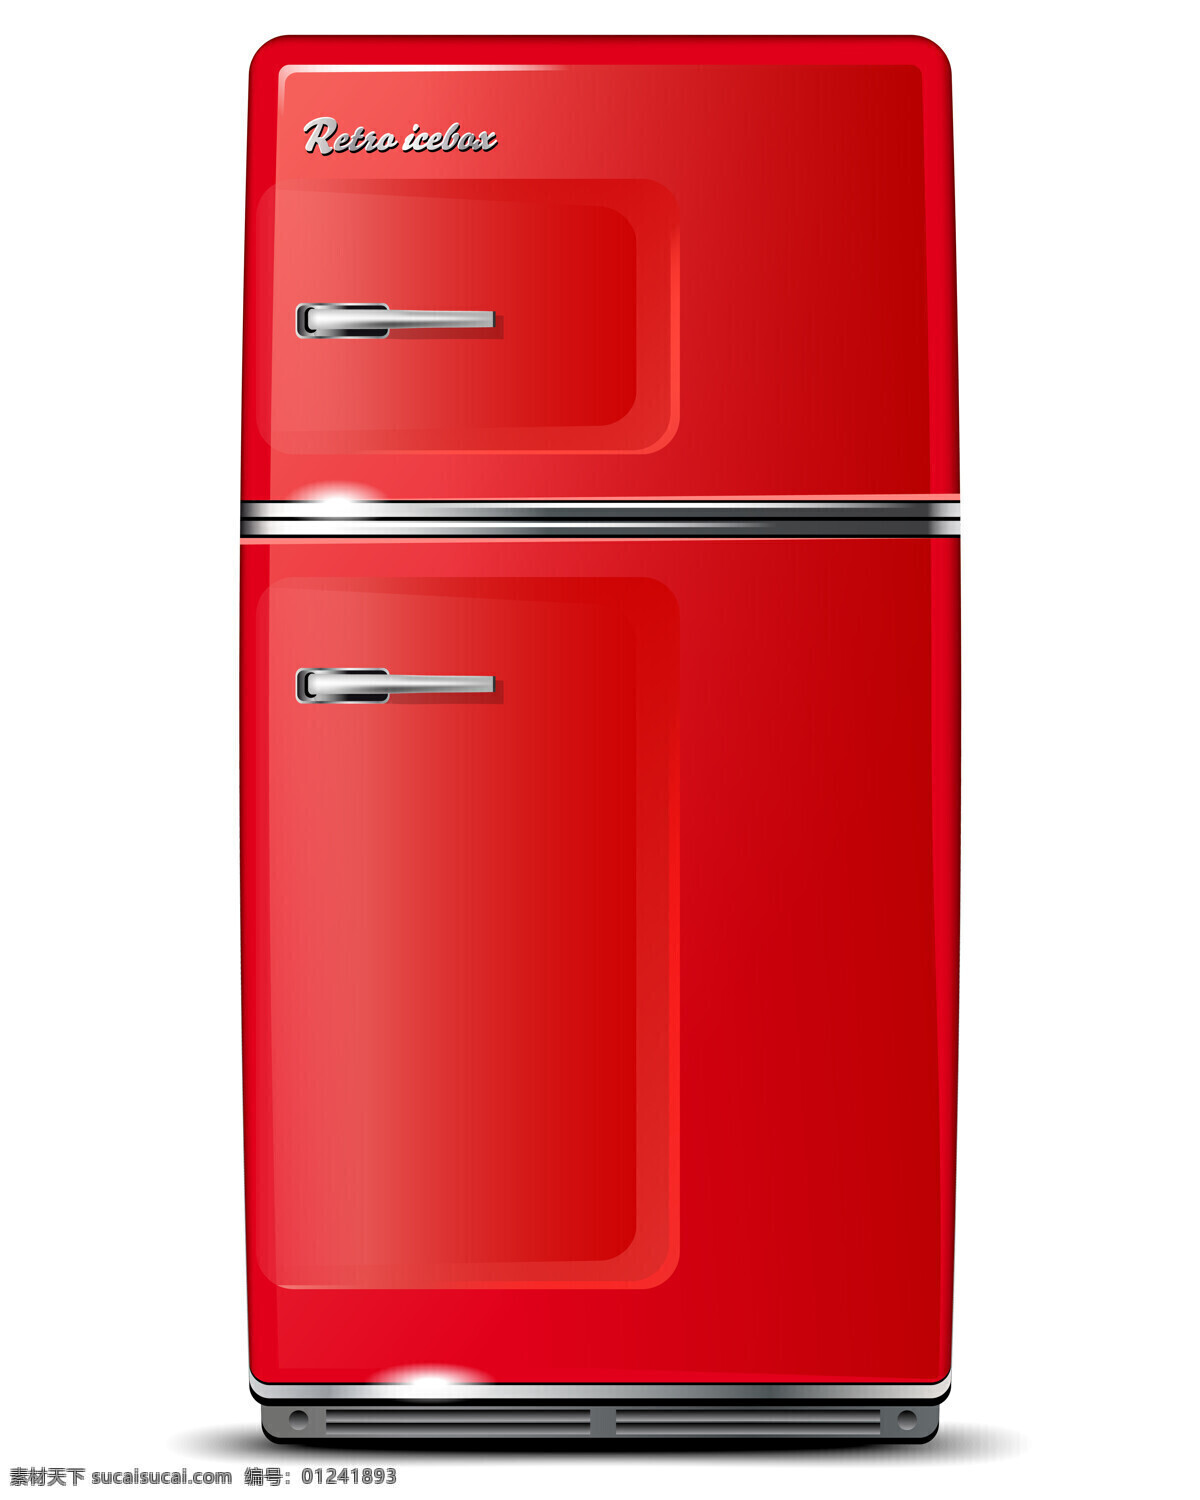 电冰箱 红色冰箱 红色 冰箱 储藏 冷冻 保鲜